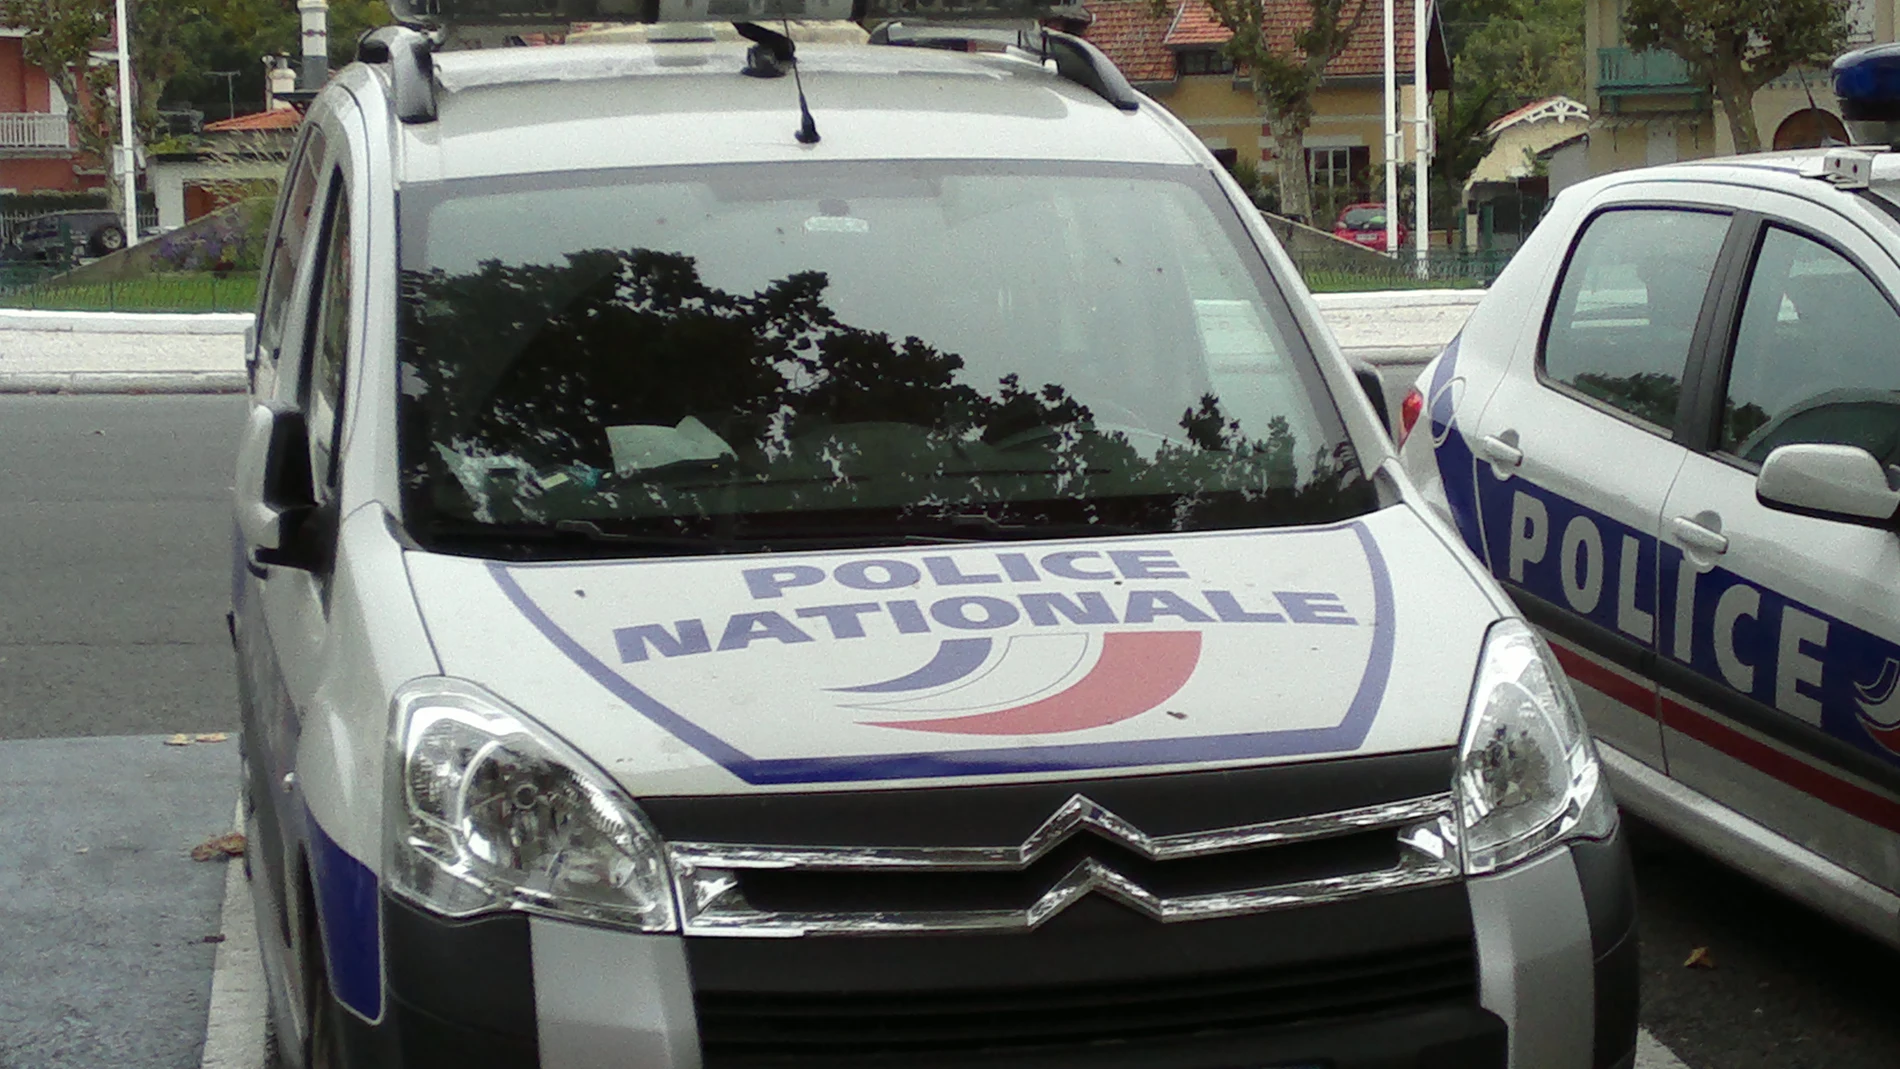 Imagen de archivo de un coche de policía en Francia